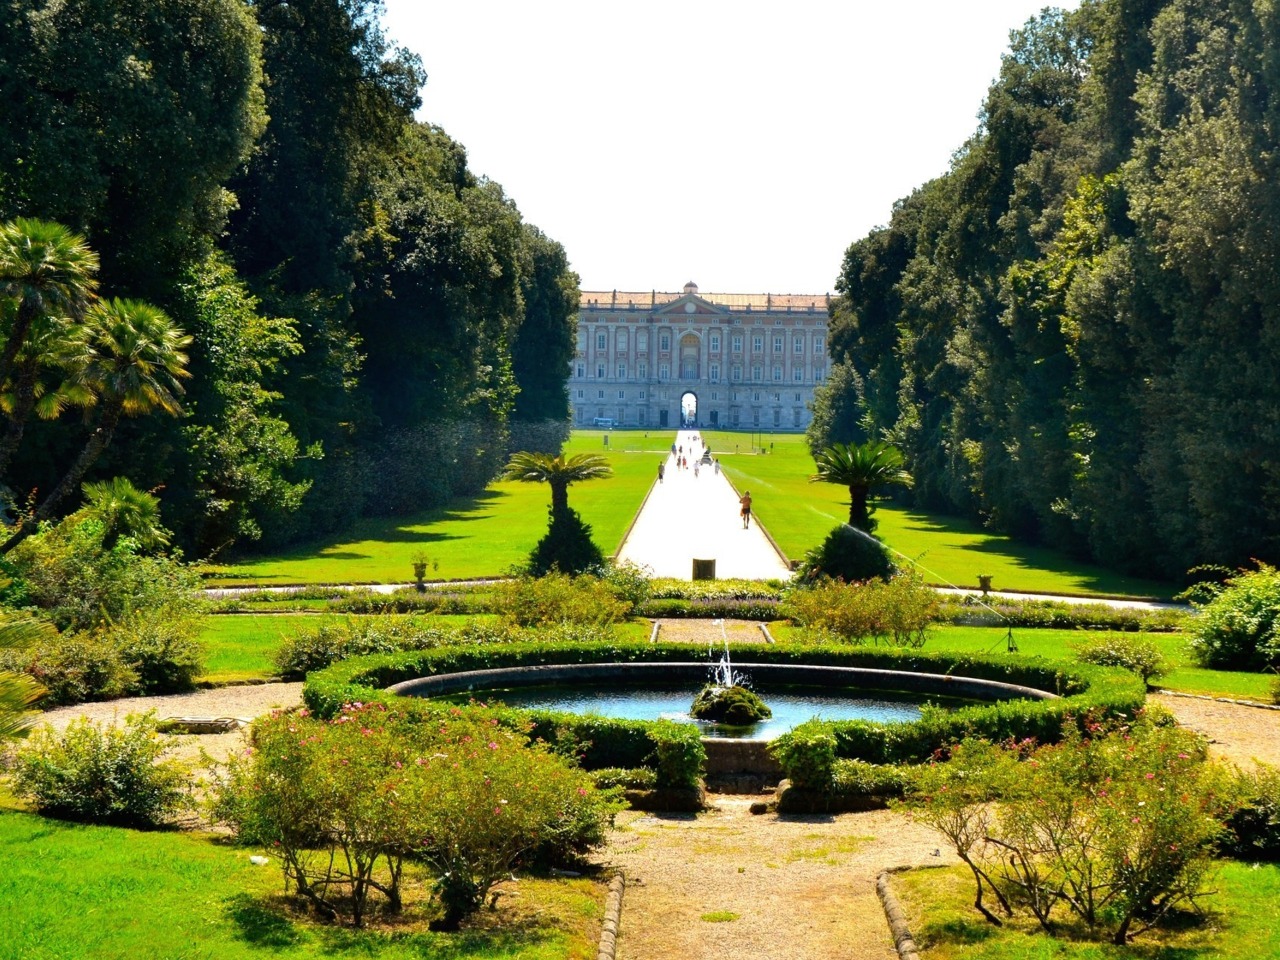 Королевский дворец в Казерте из Неаполя | Цена 160€, отзывы, описание экскурсии